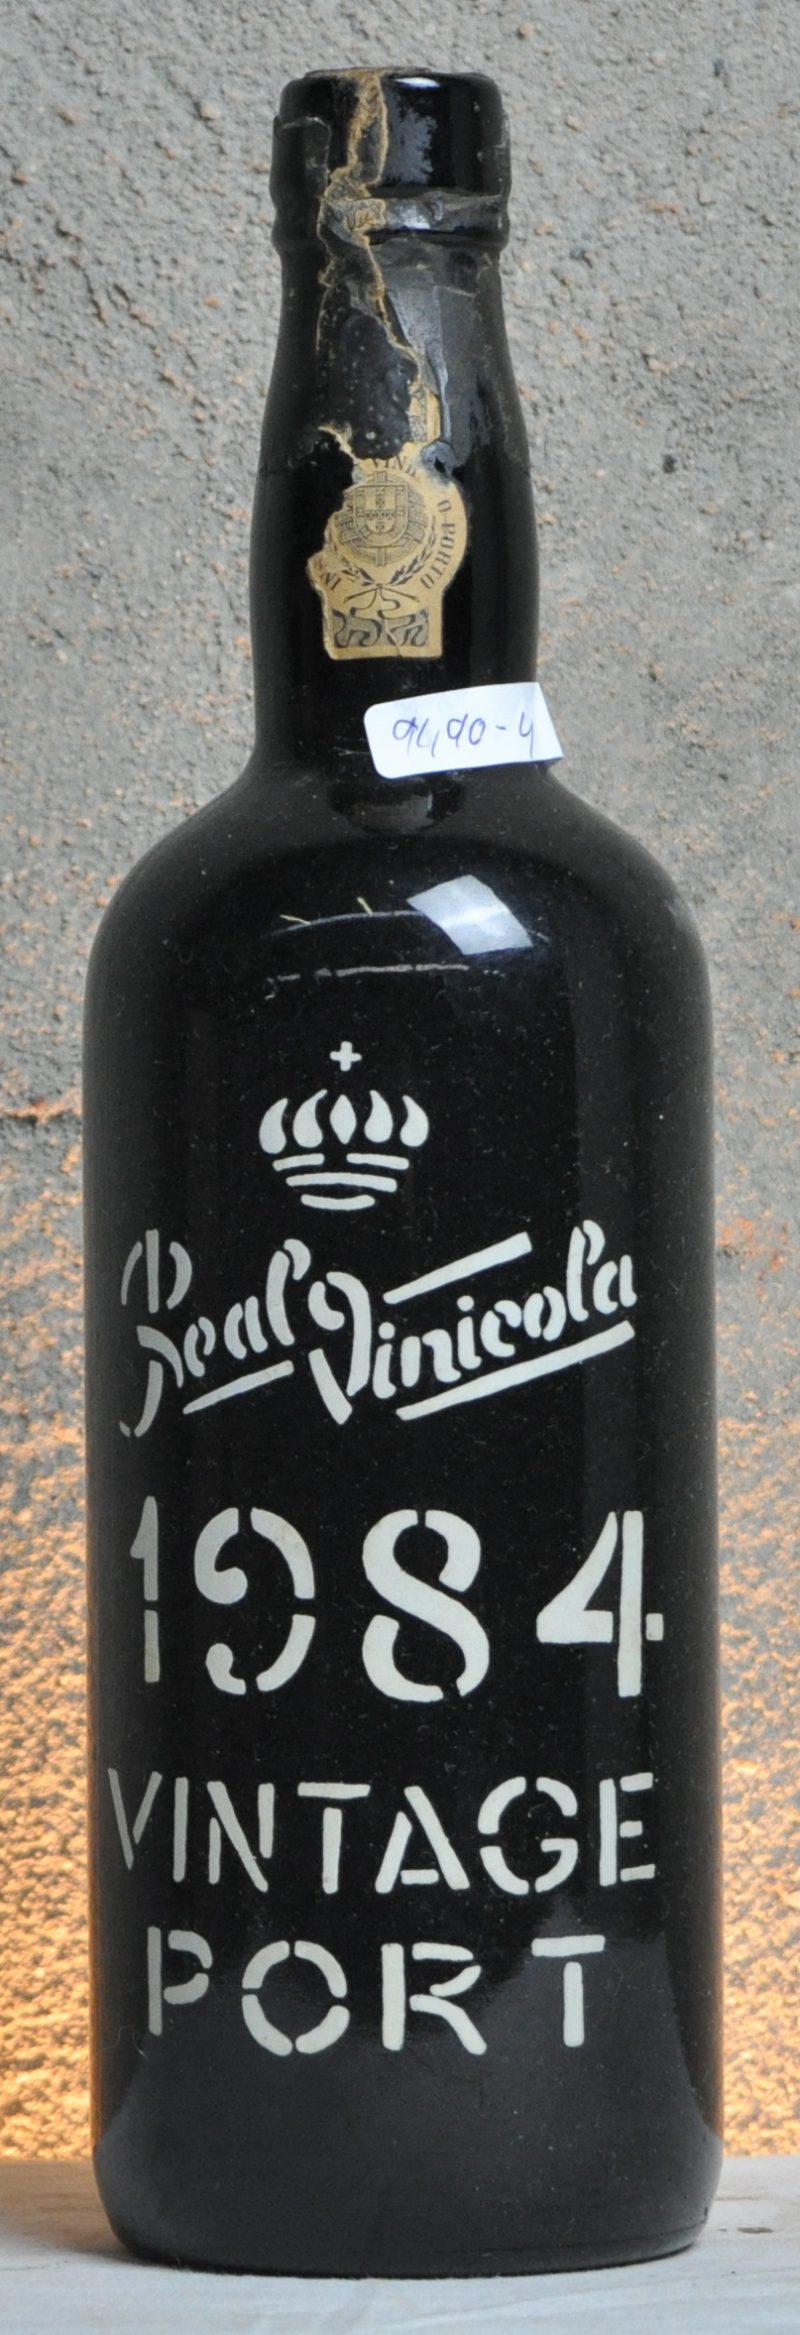 Vintage Port   Real Companhia Vinicola do Norte de Portugal S.A., Vila Nova de Gaia M.O.  1984  aantal: 1 bt